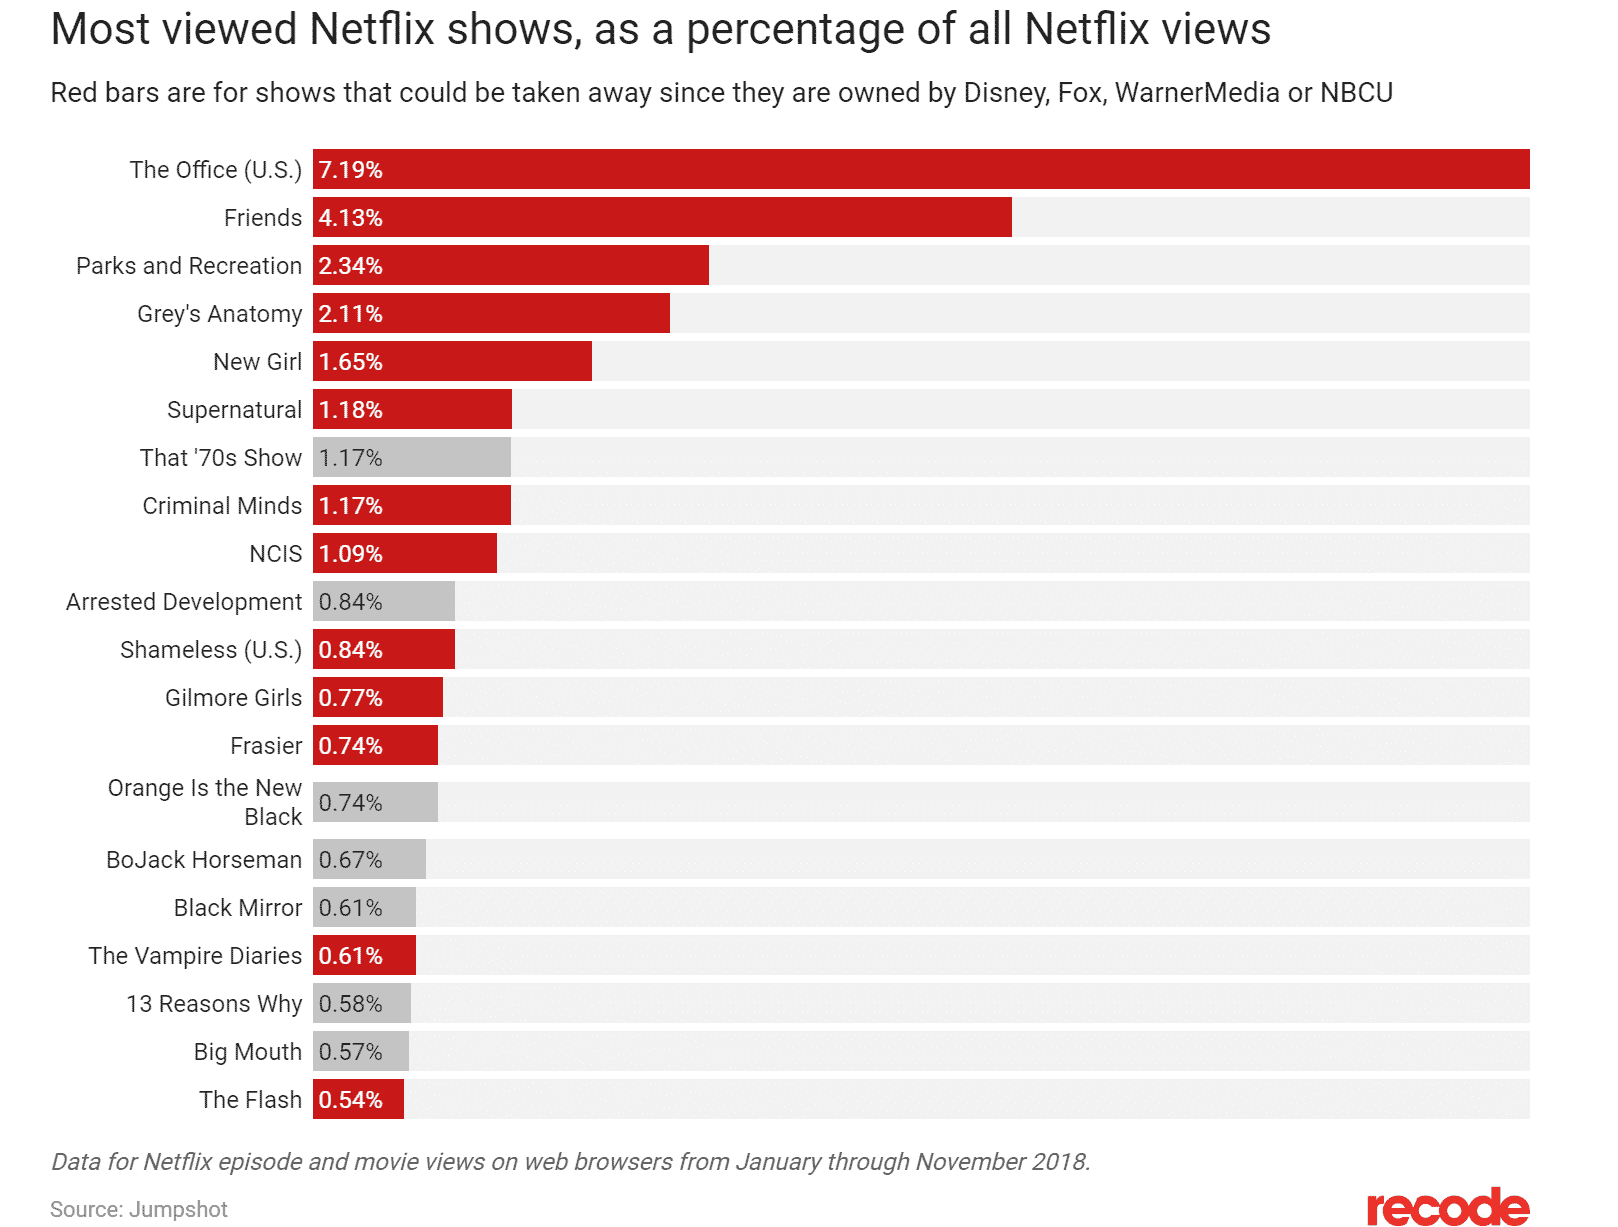 Comment faire pour ne pas payer Netflix ?